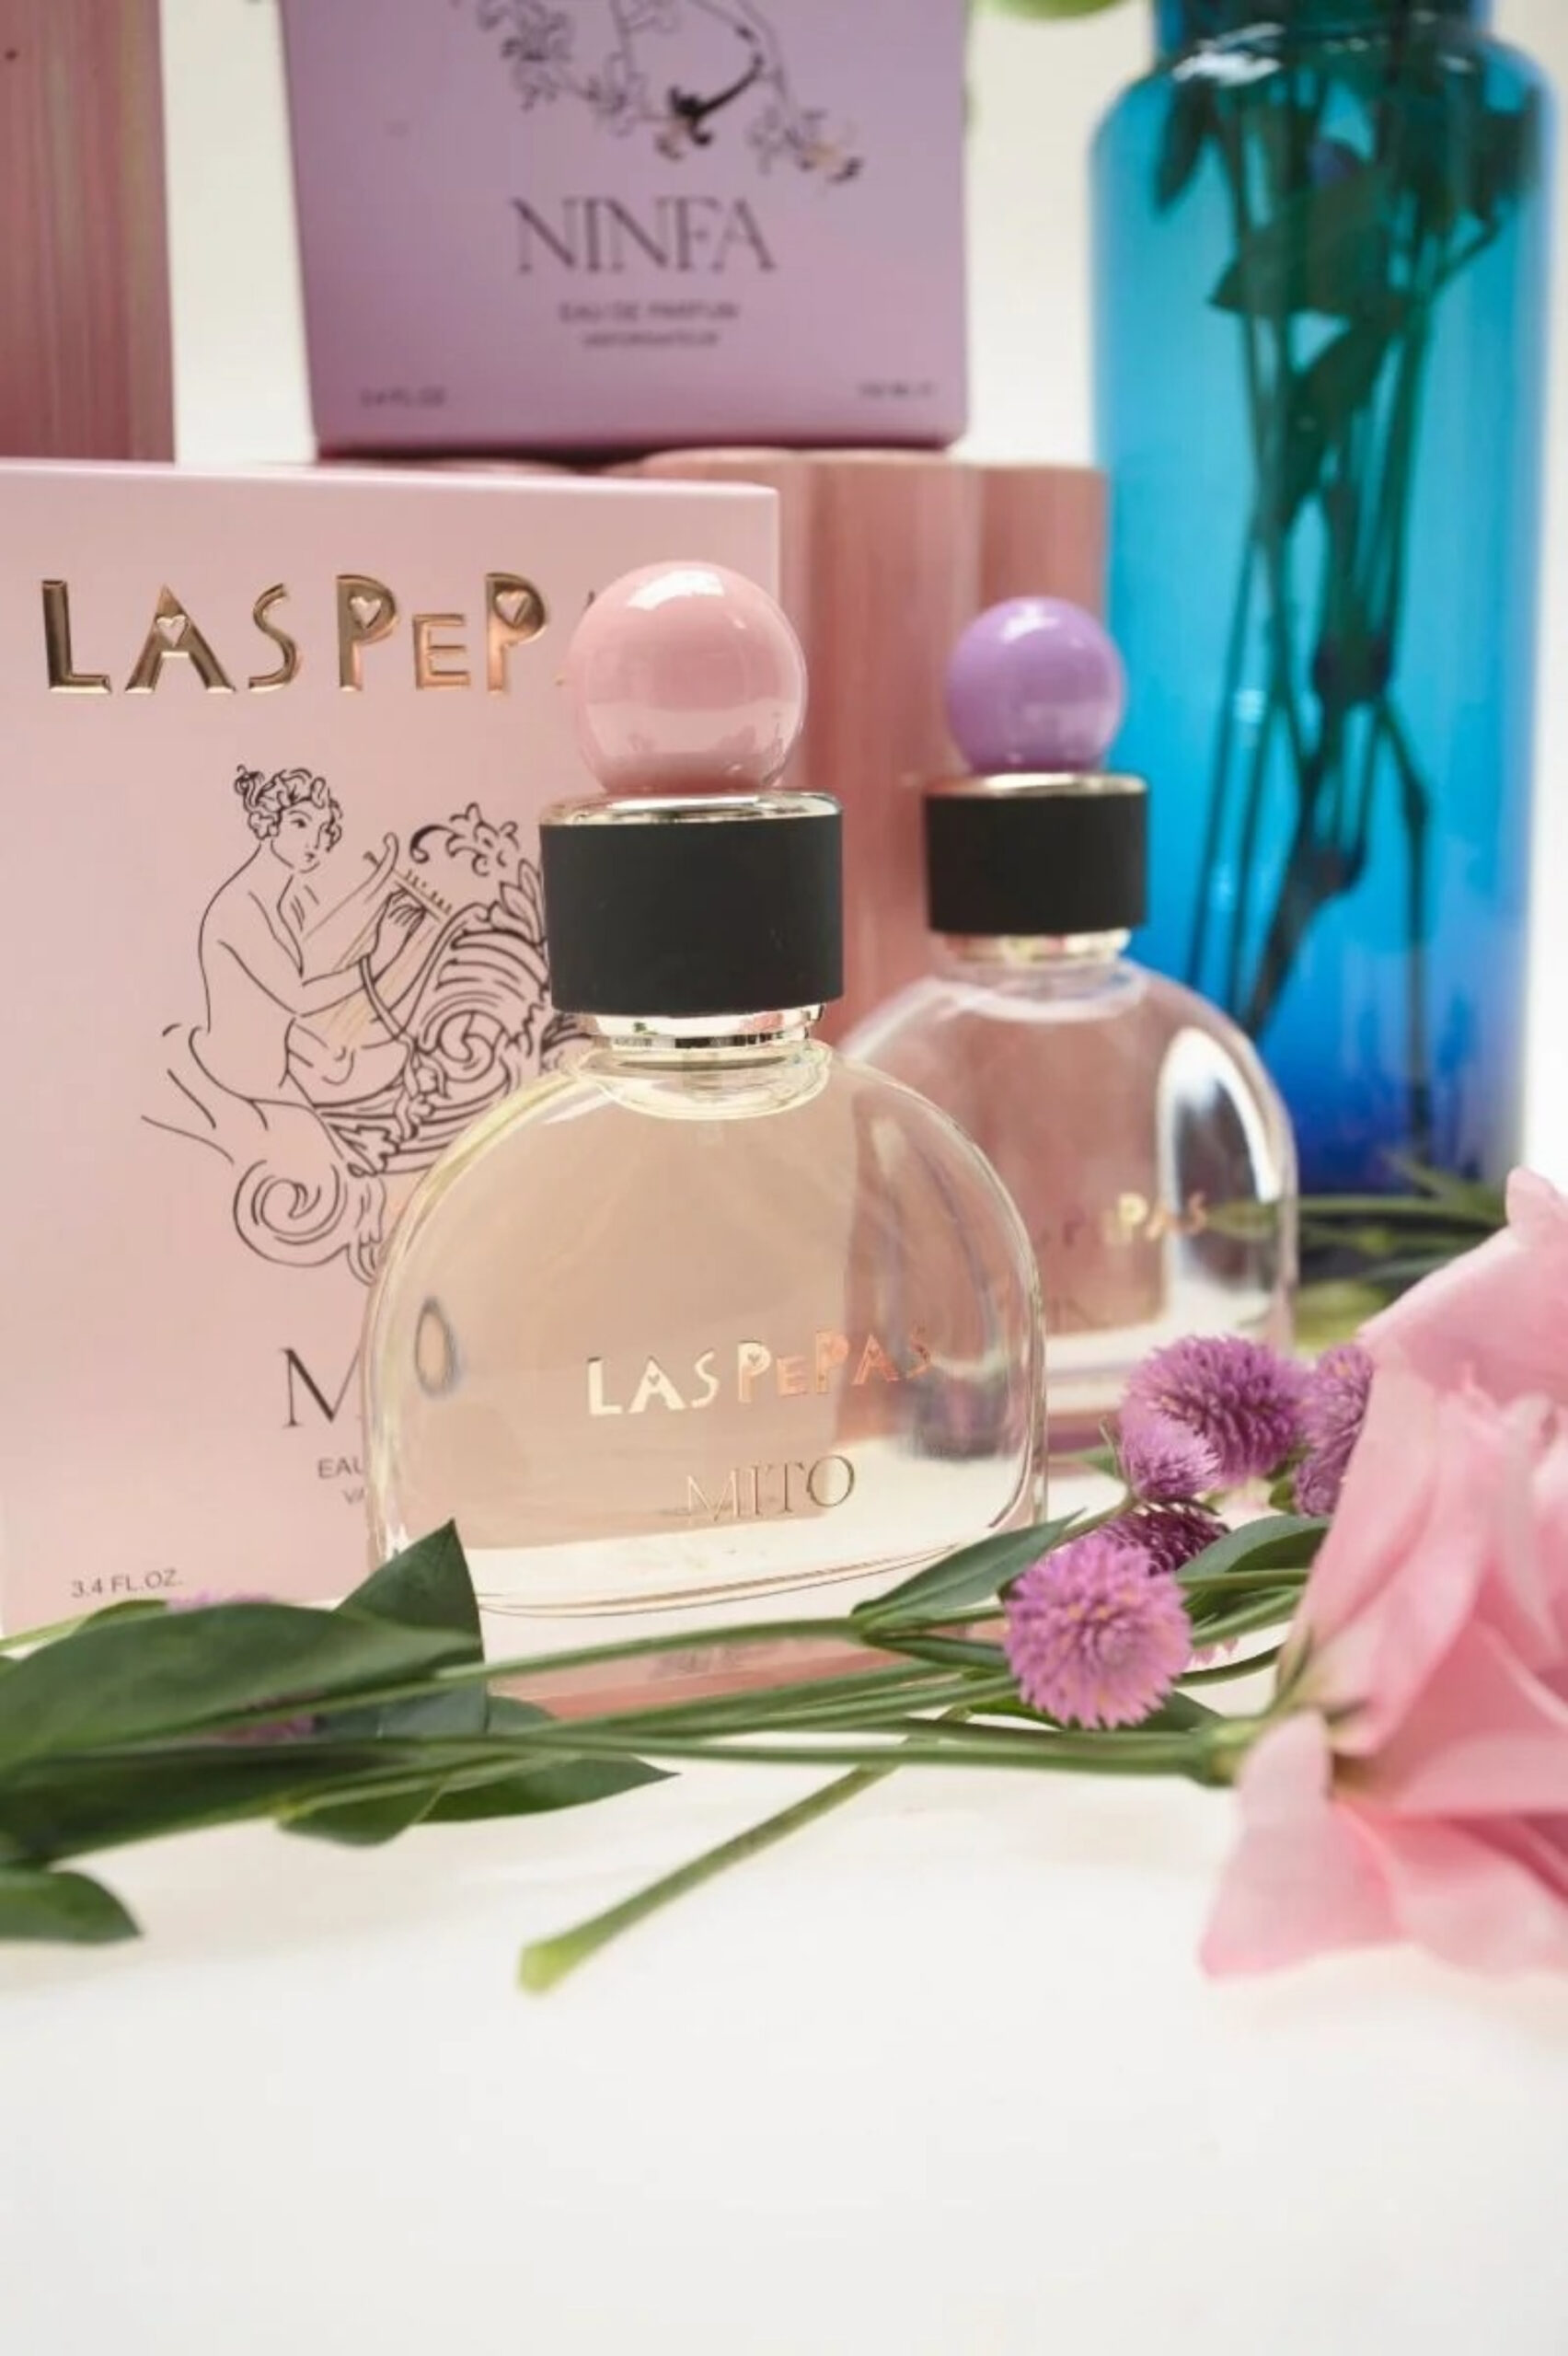 "Ninfa" y "Mito", dos nuevos perfumes de Las Pepas